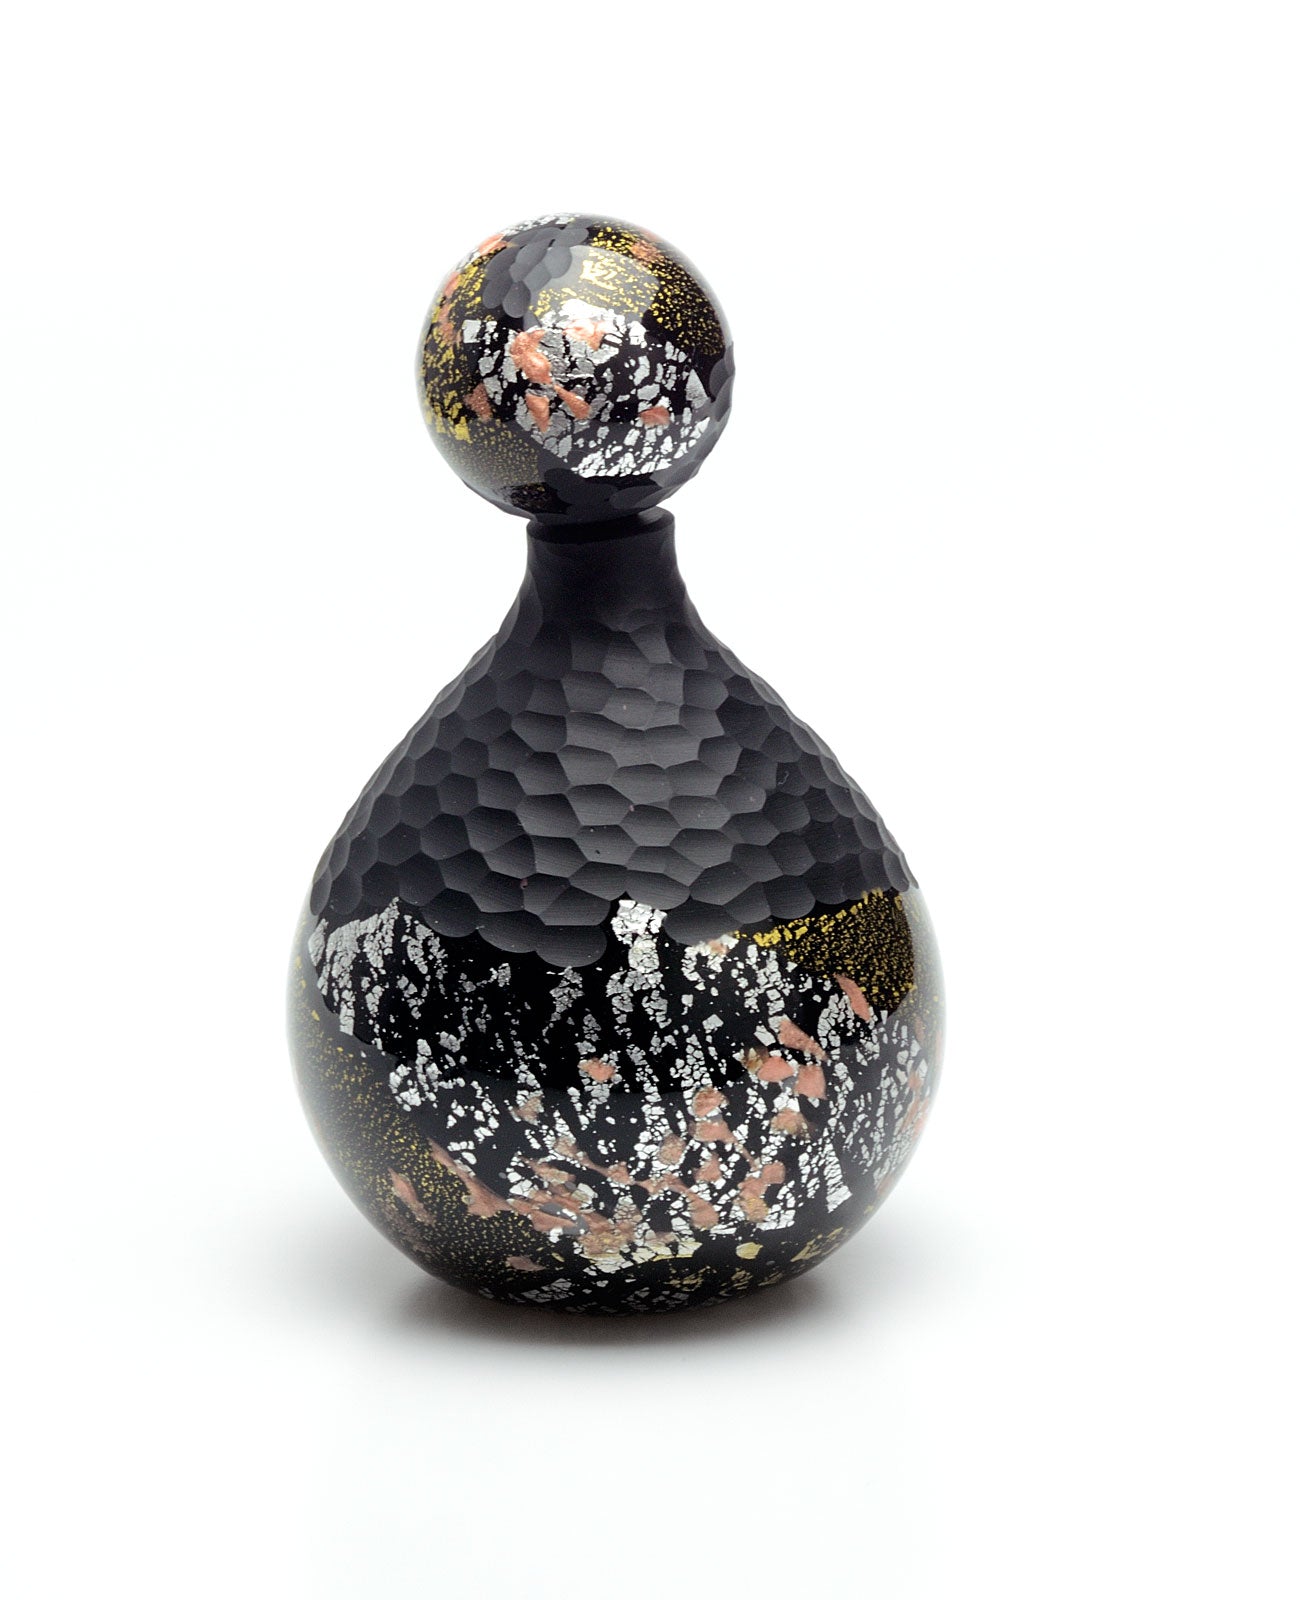 Profumatore D'ambiente Sfera Marte Luna in Vetro Di Murano - Vetri D'Arte - Room Fragrance Murano Glass